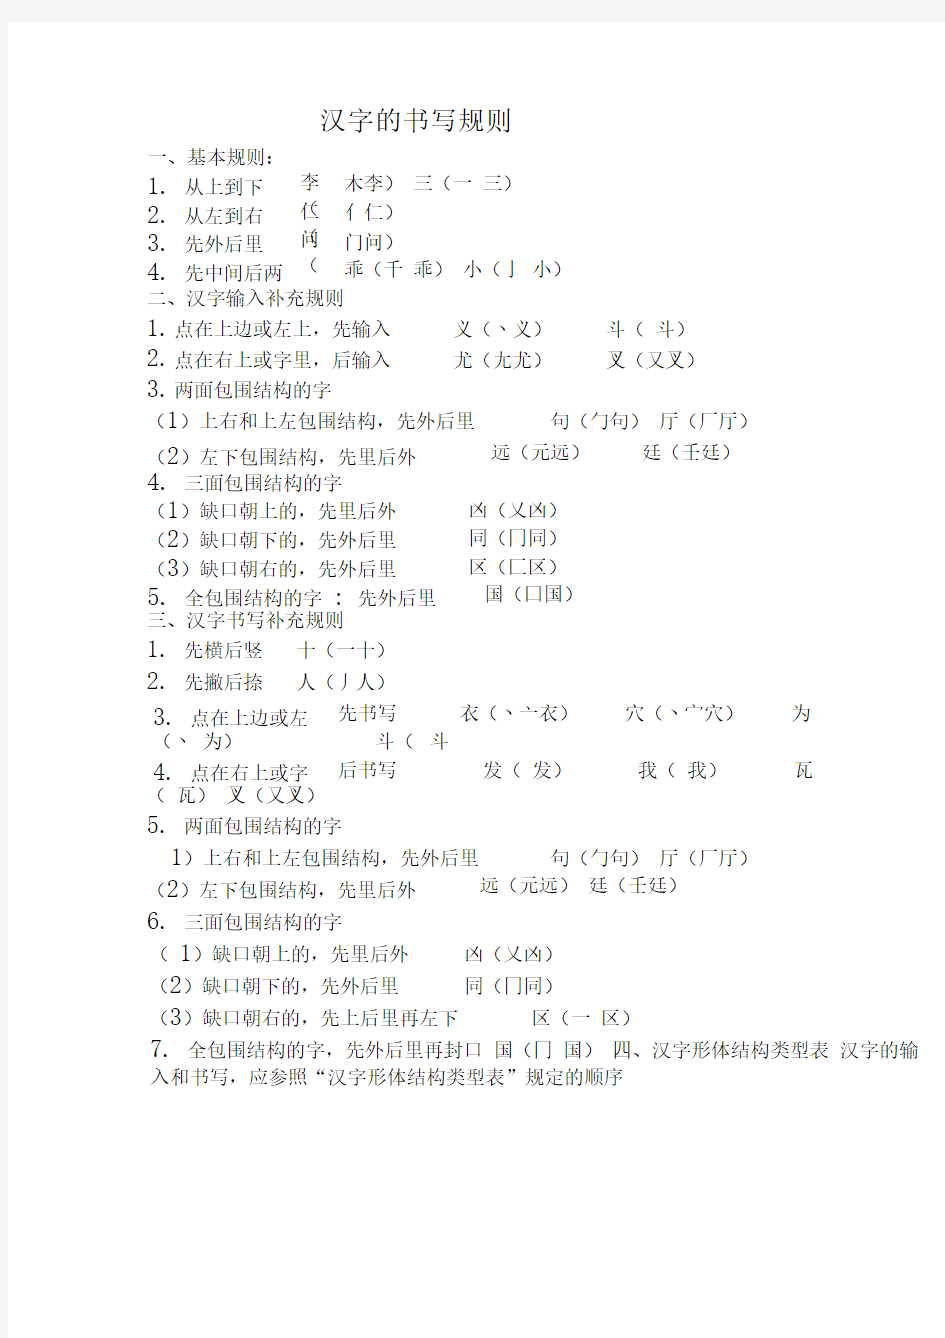 一年级汉字笔画和部首名称大全表及试题(可下载打印)